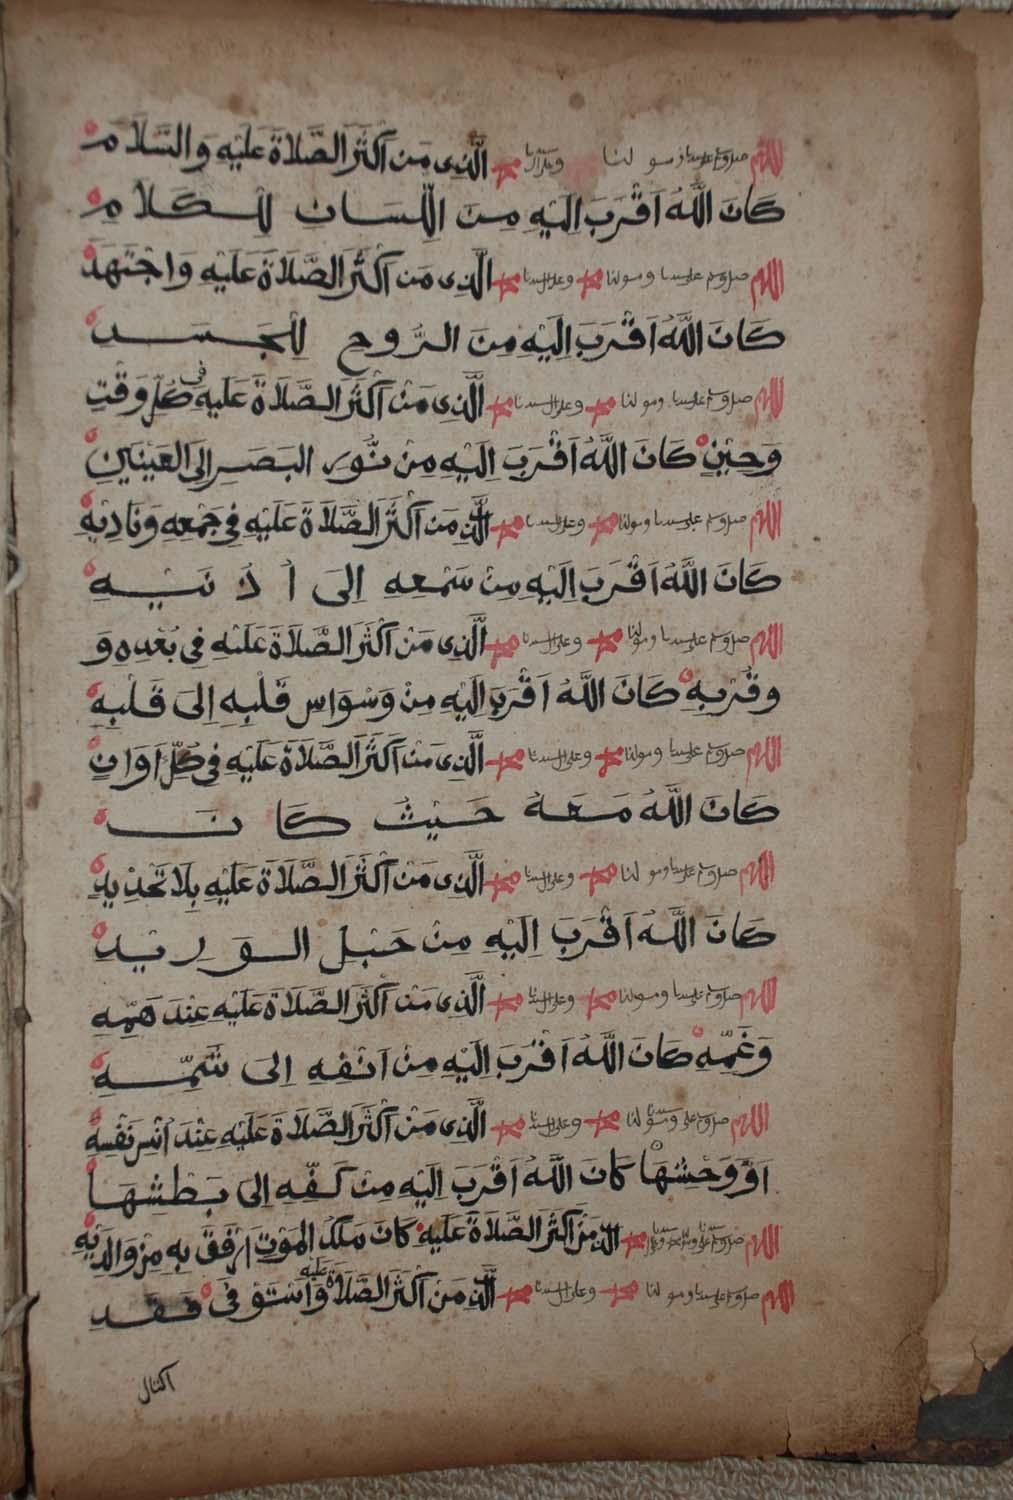 prayer book by ʿAbd al-ǧalīl b. Muḥammad b. Aḥmad b. ʿAẓẓūm al-murādī al-qayrawānī. (W.